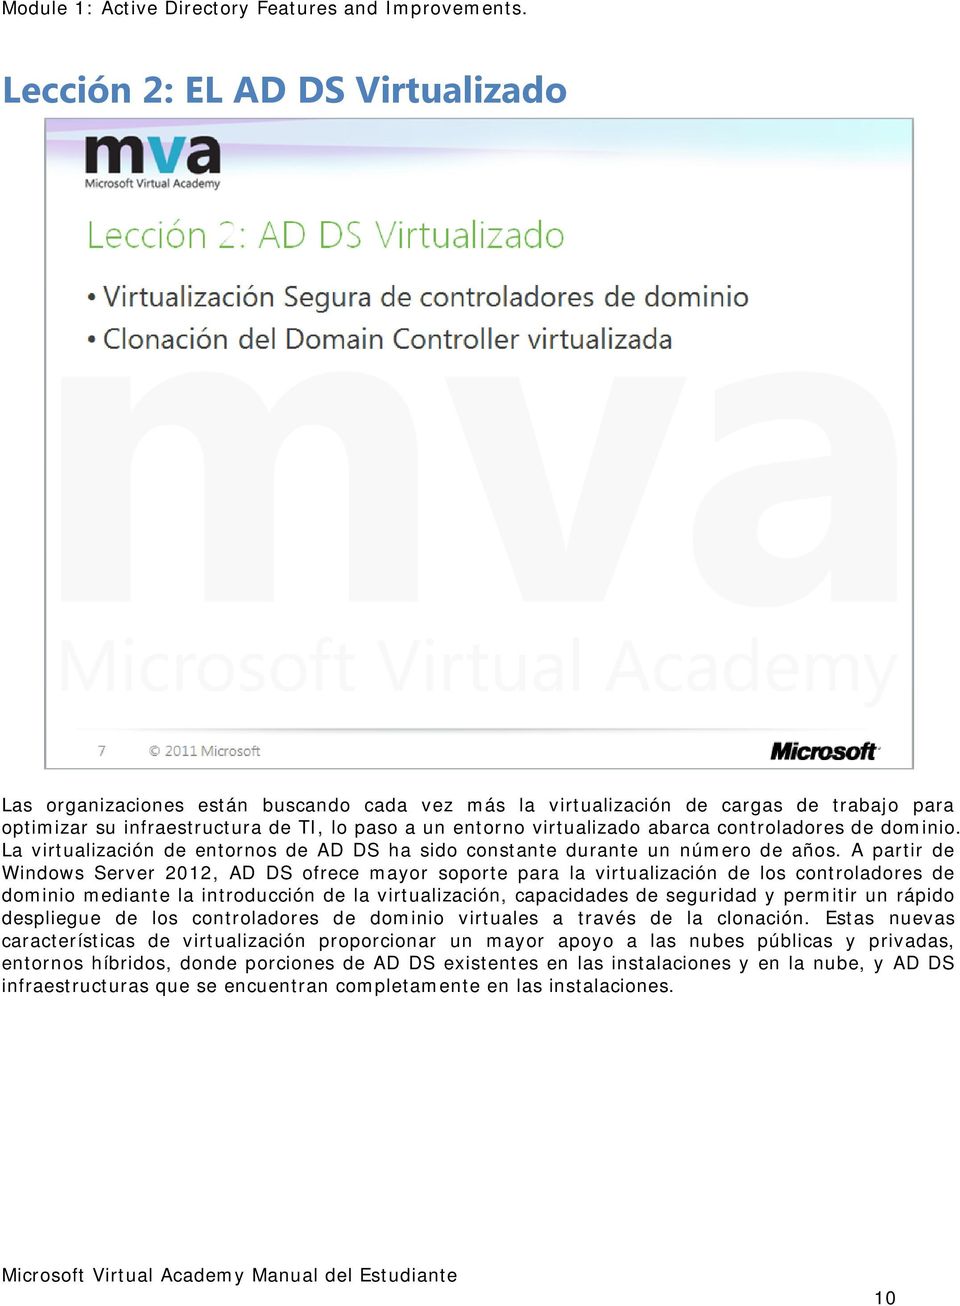 A partir de Windows Server 2012, AD DS ofrece mayor soporte para la virtualización de los controladores de dominio mediante la introducción de la virtualización, capacidades de seguridad y permitir